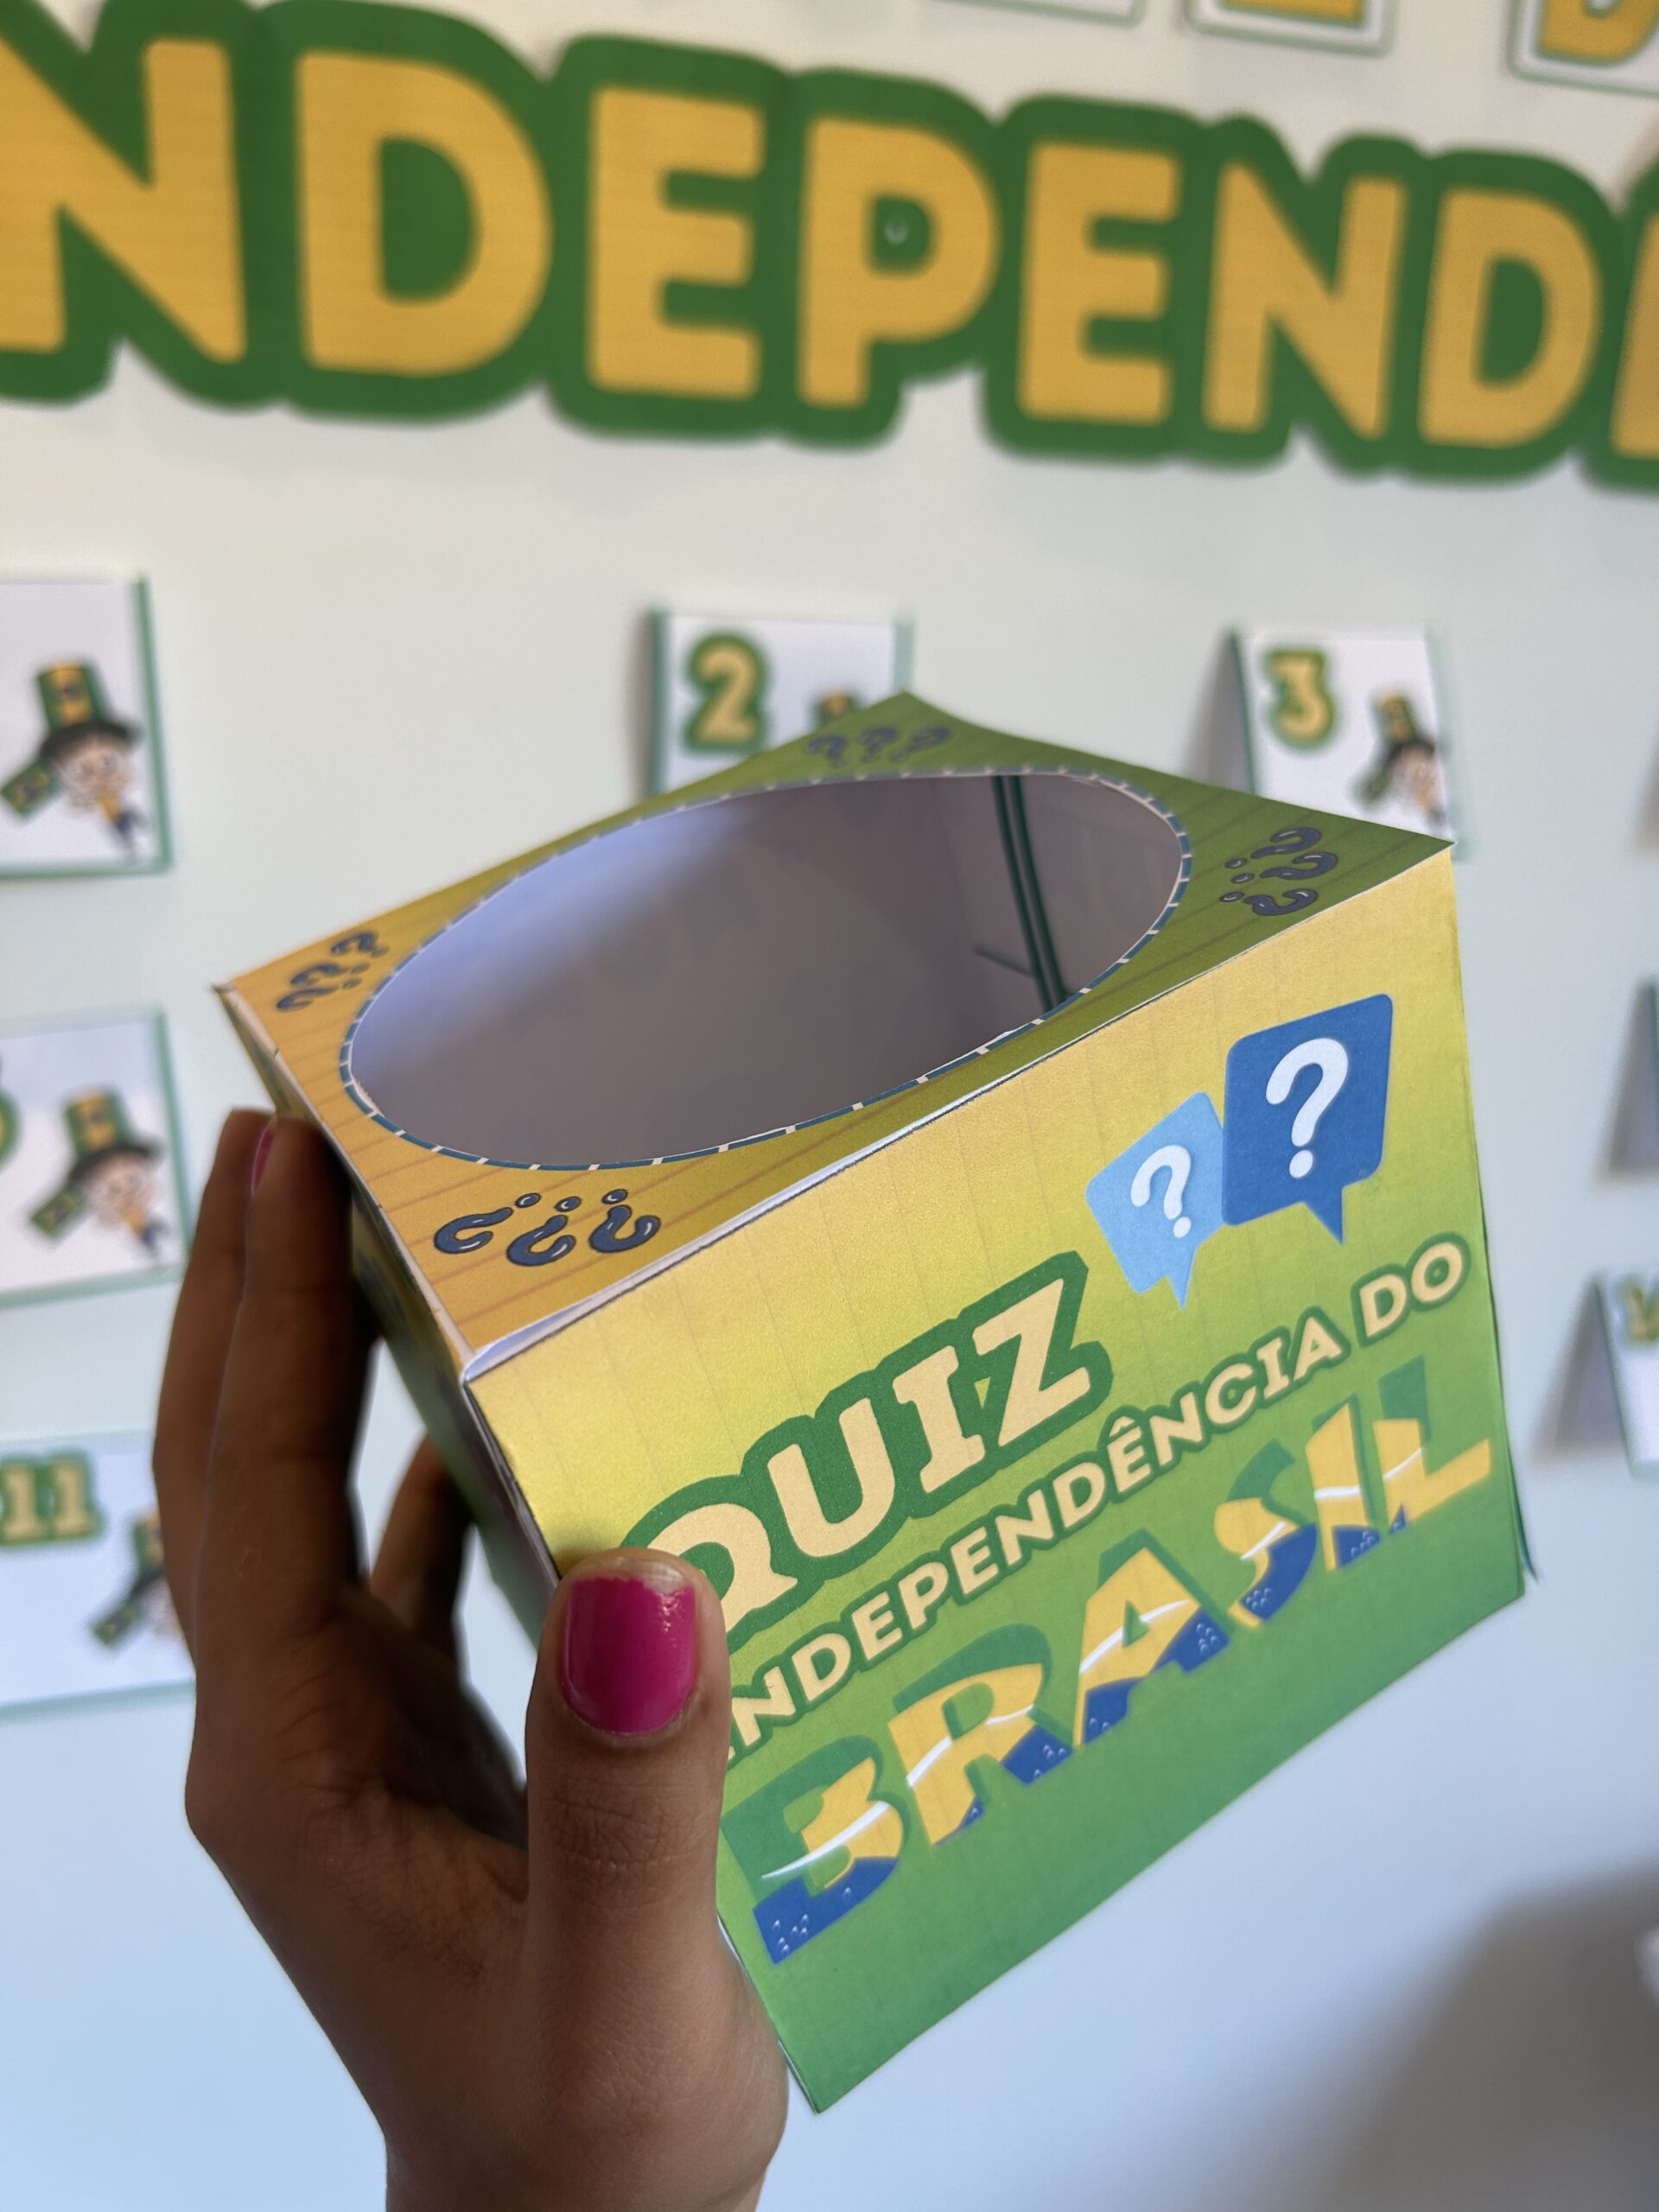 Independência do Brasil - Jogo de perguntas e respostas / Quiz